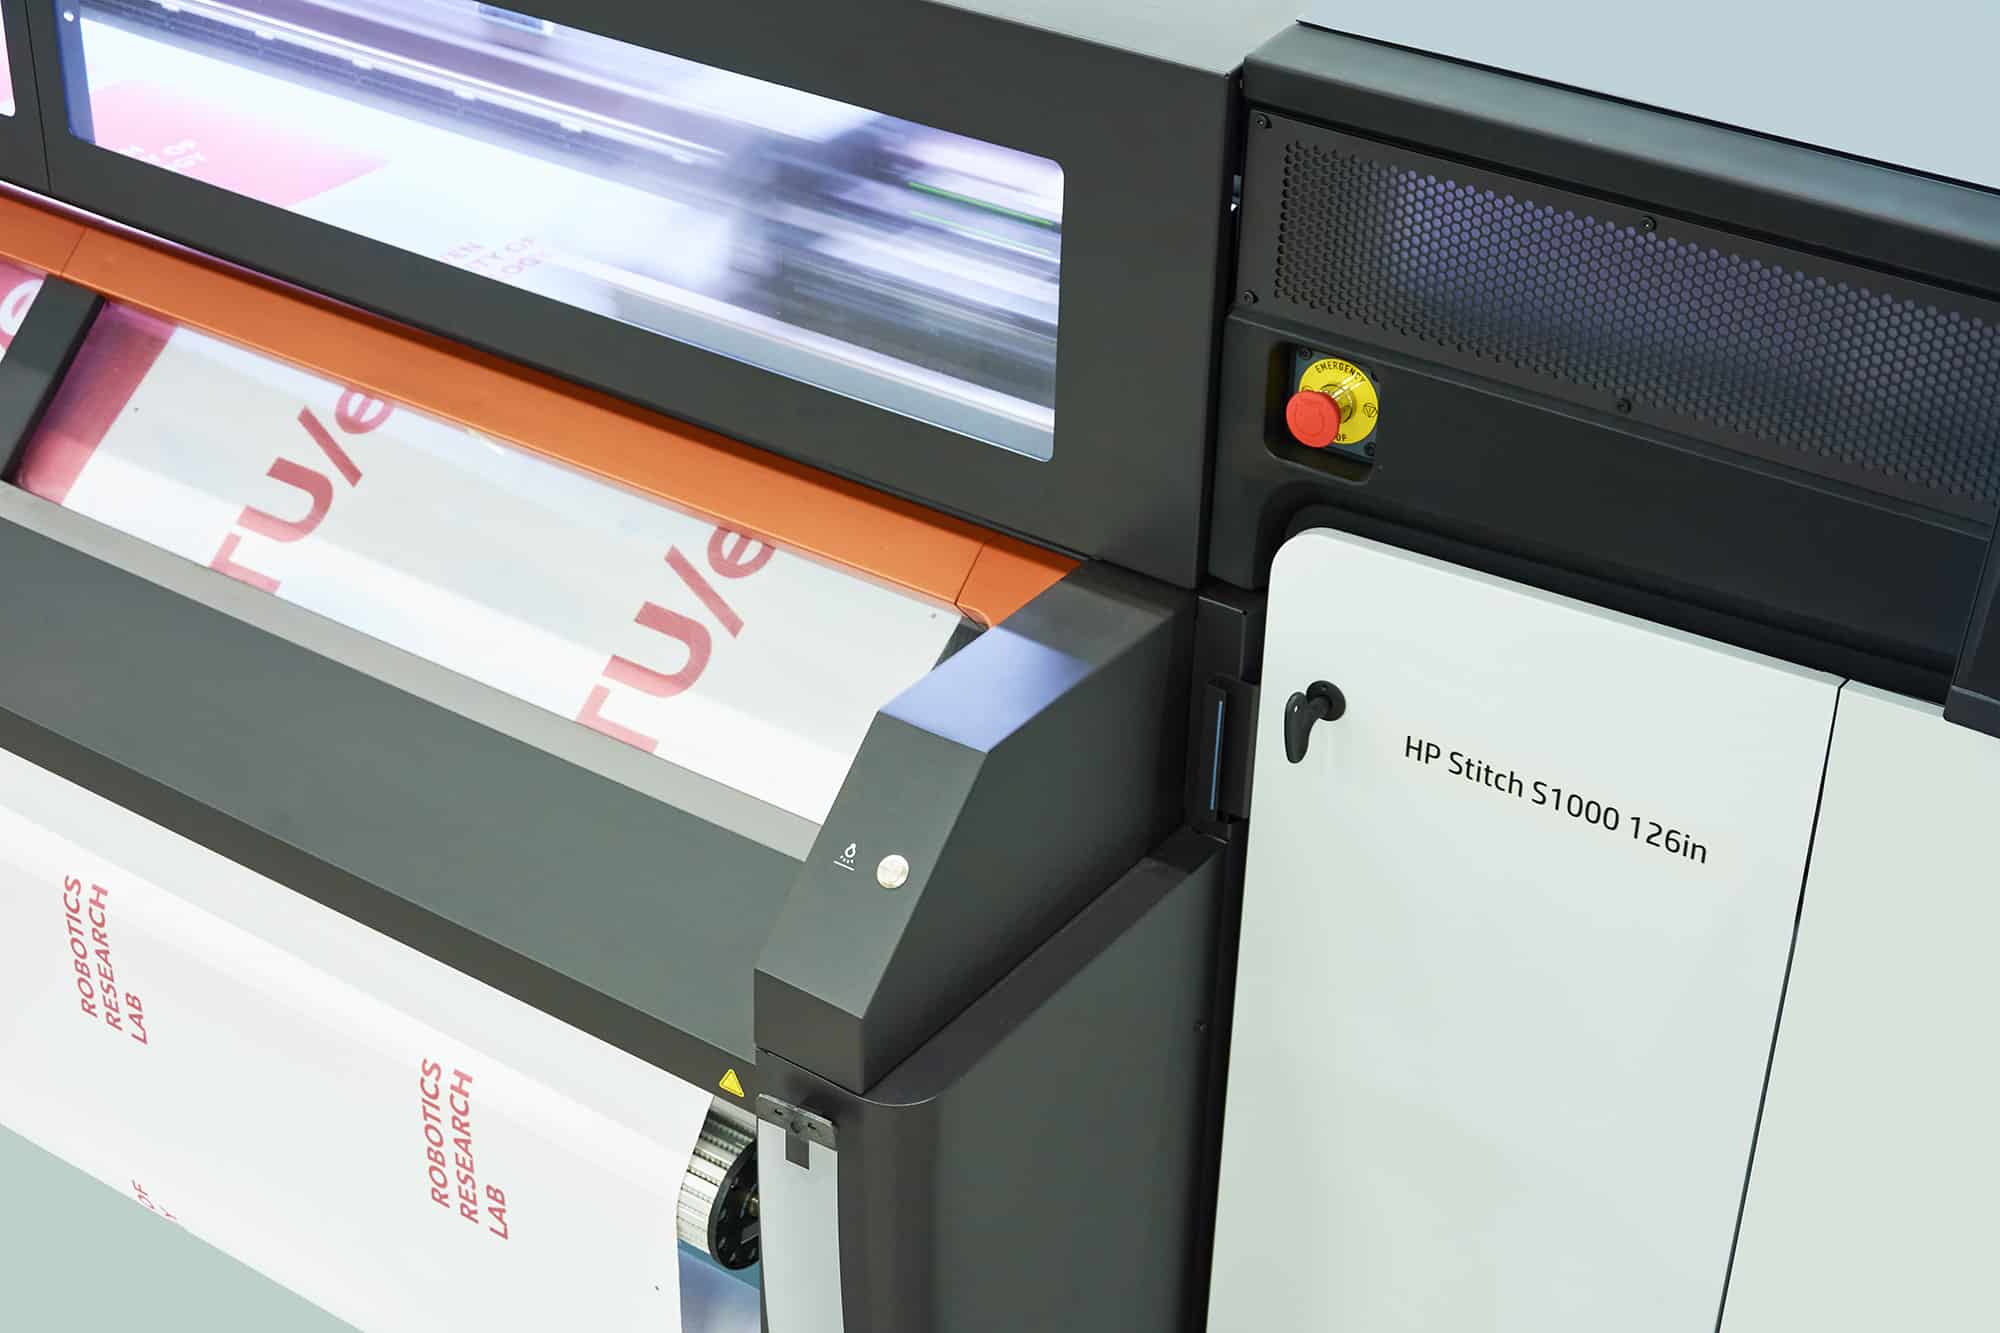 Ein Drucker HP Stitch S1000 sowie ein Sublimations- und Fixierkalander Klieverik GTC101-3500 zum Fixieren von bedruckten Textilien